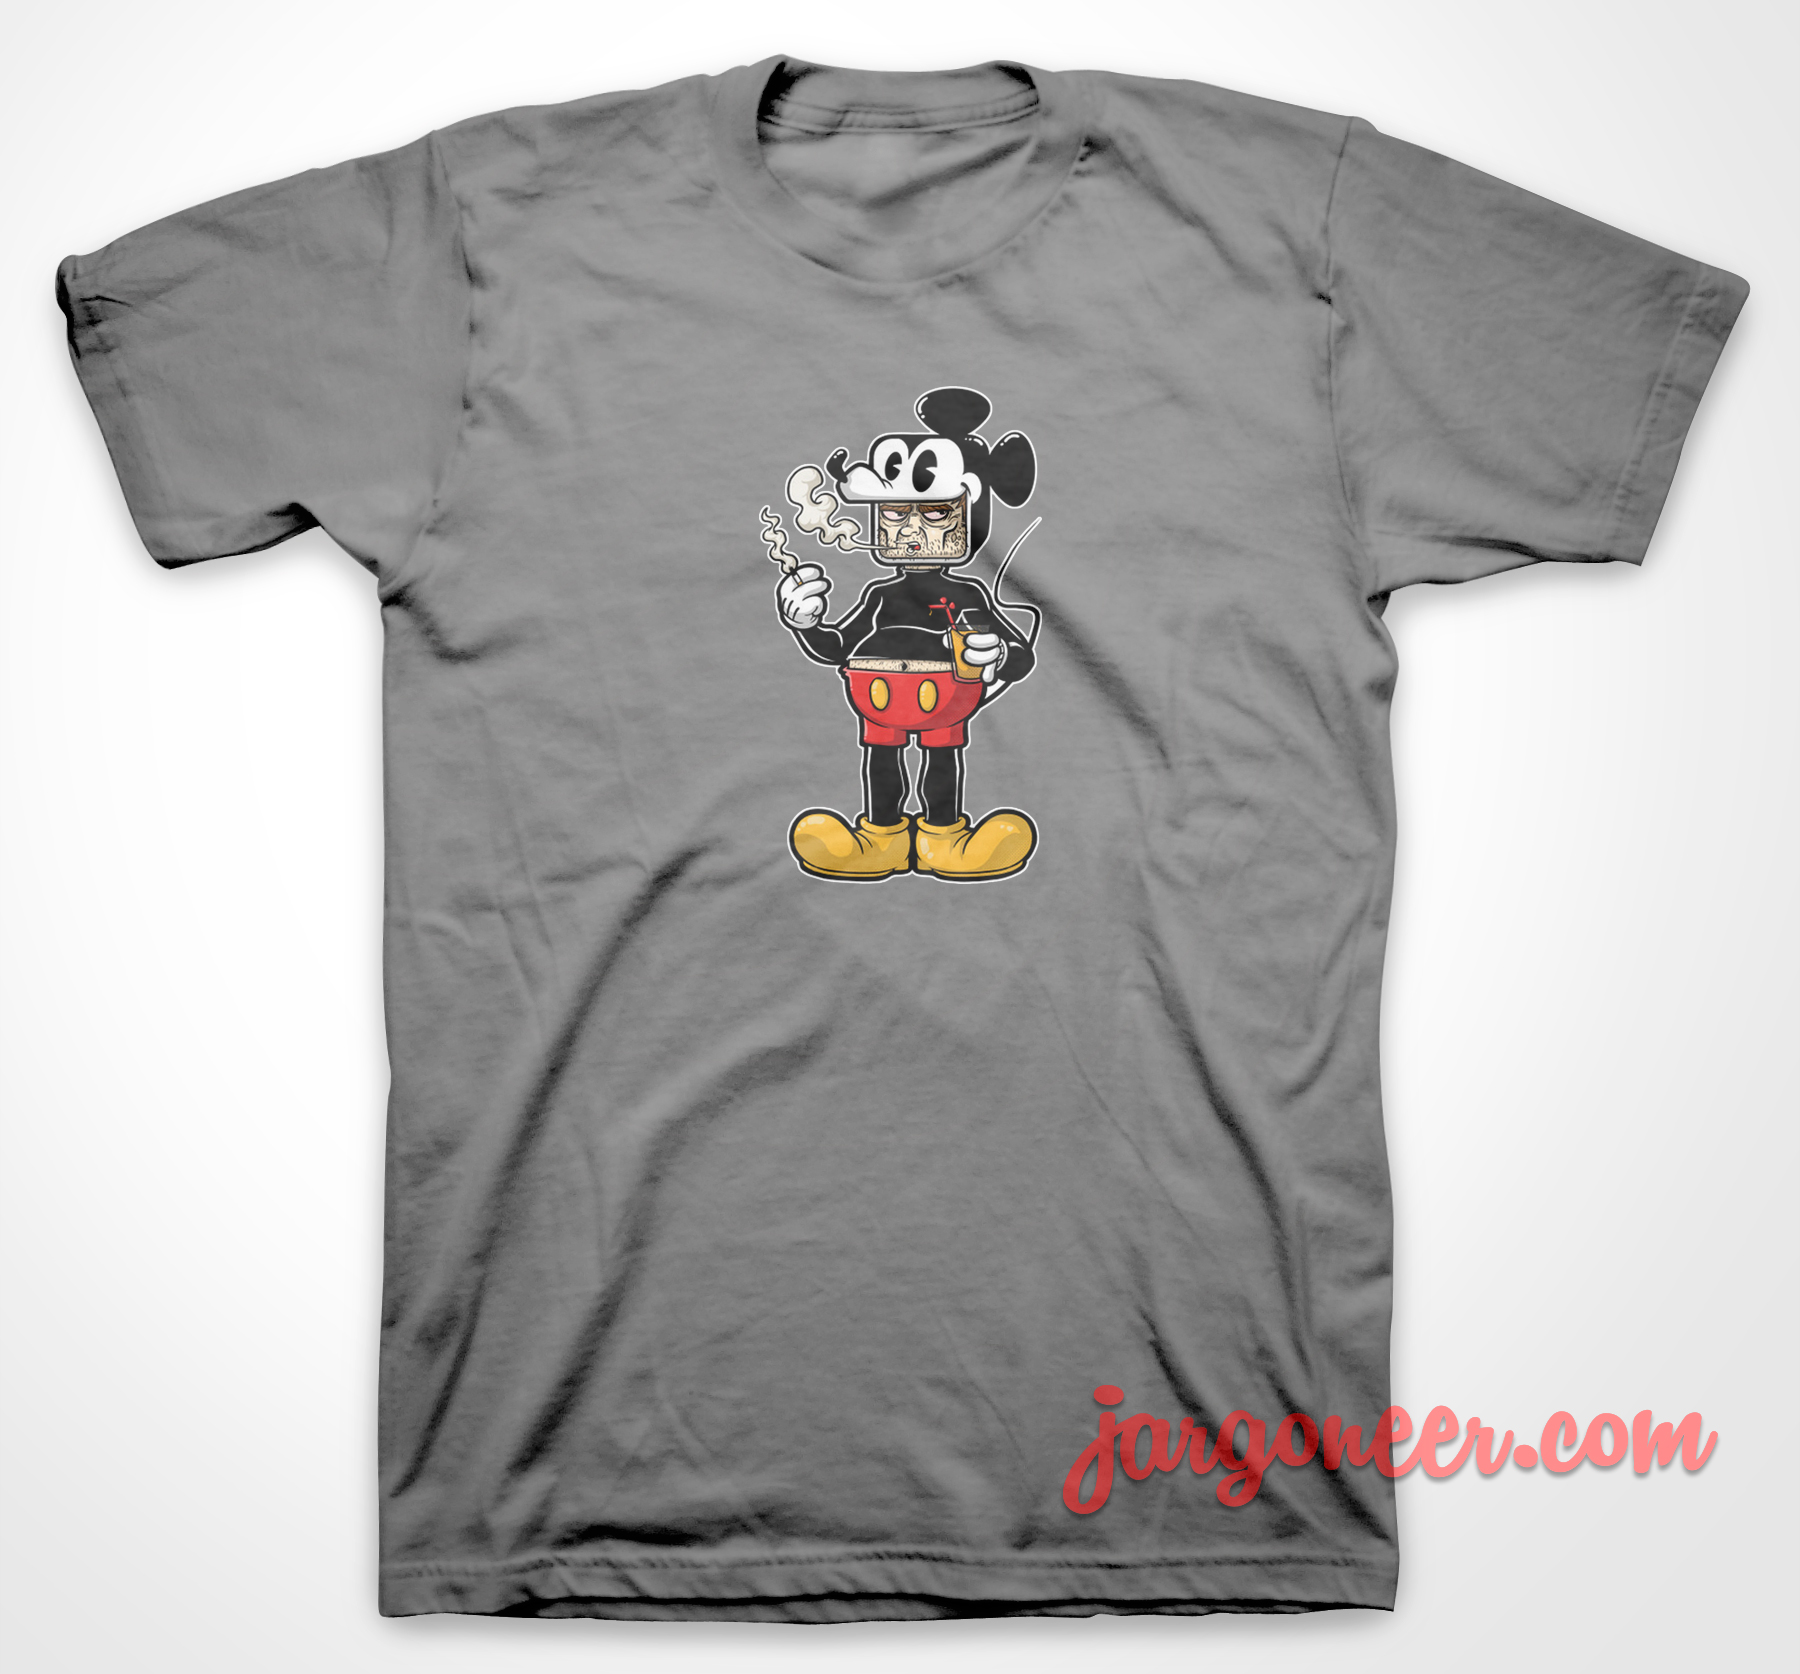 Dope Mouse - Shop Unique Graphic Cool Shirt Designs